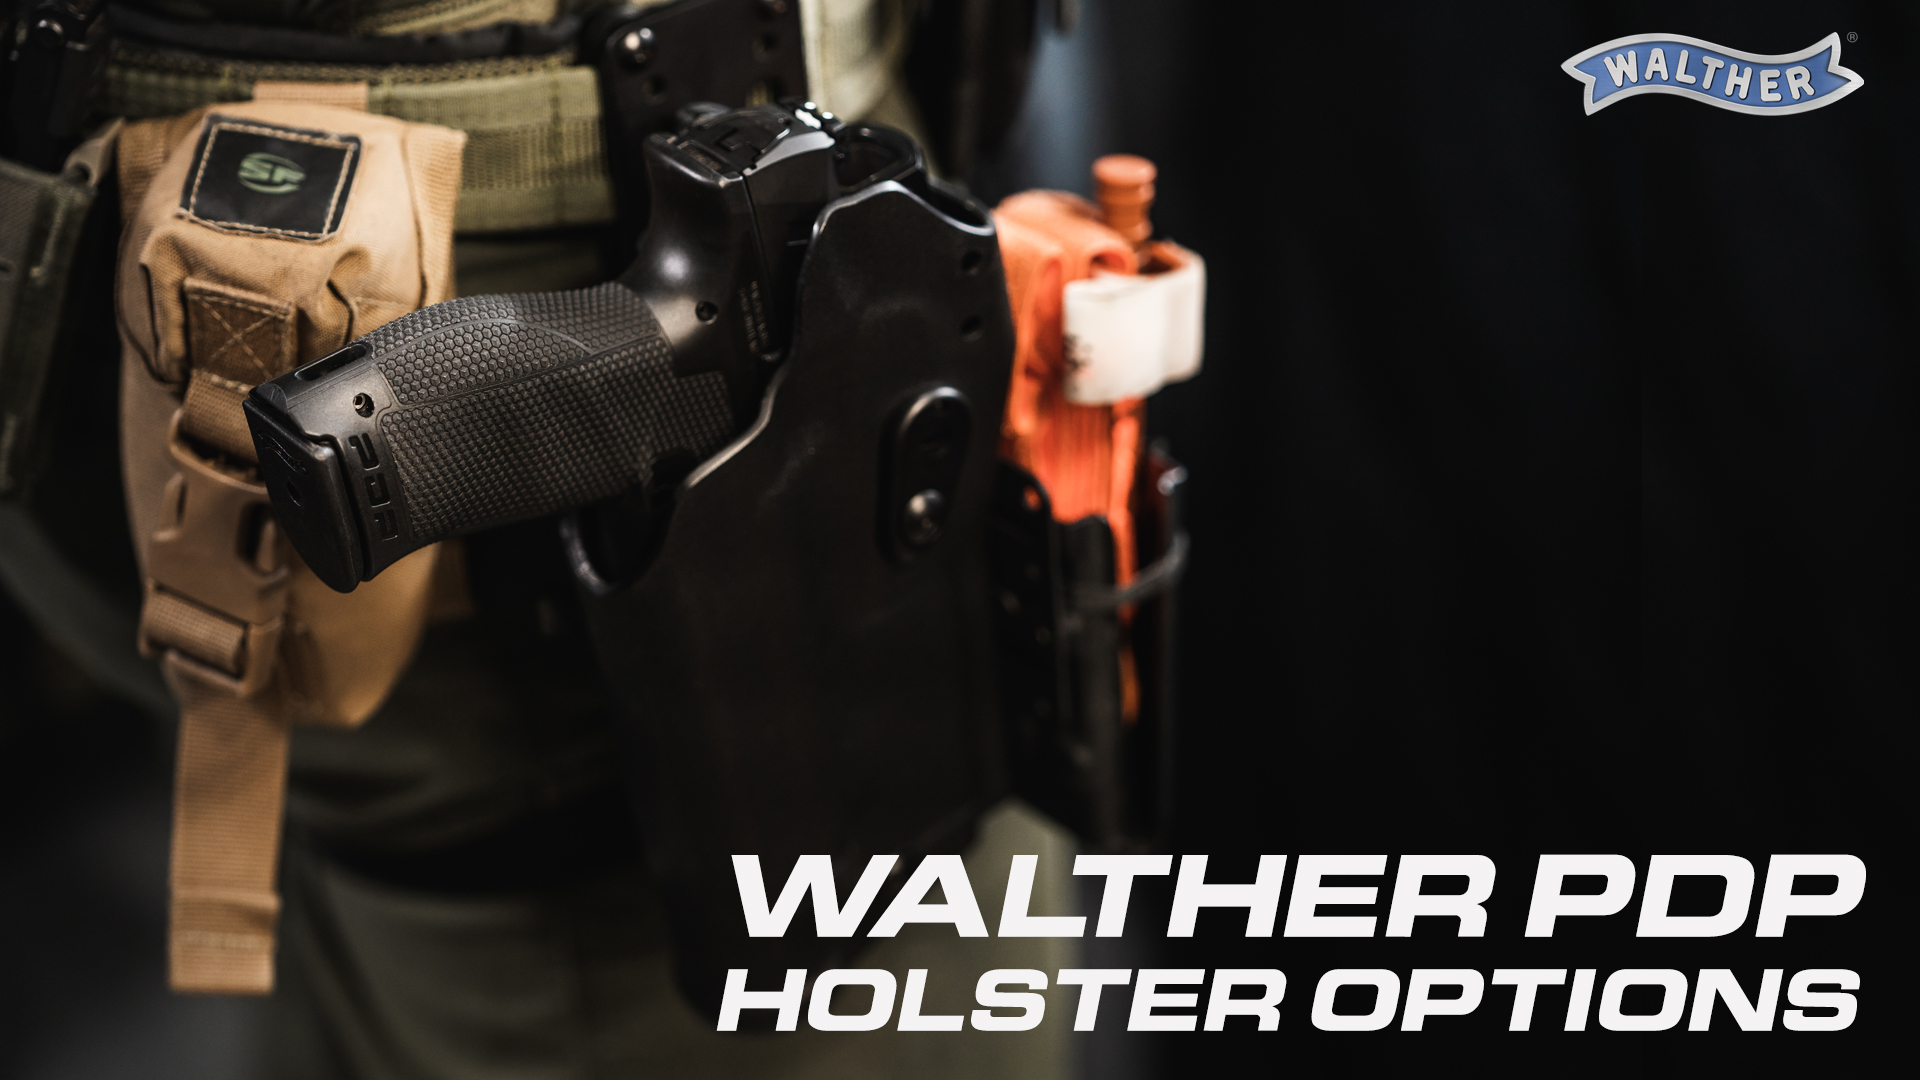 Holsters - Duty Gear - Gear: 4.5 and Pistol